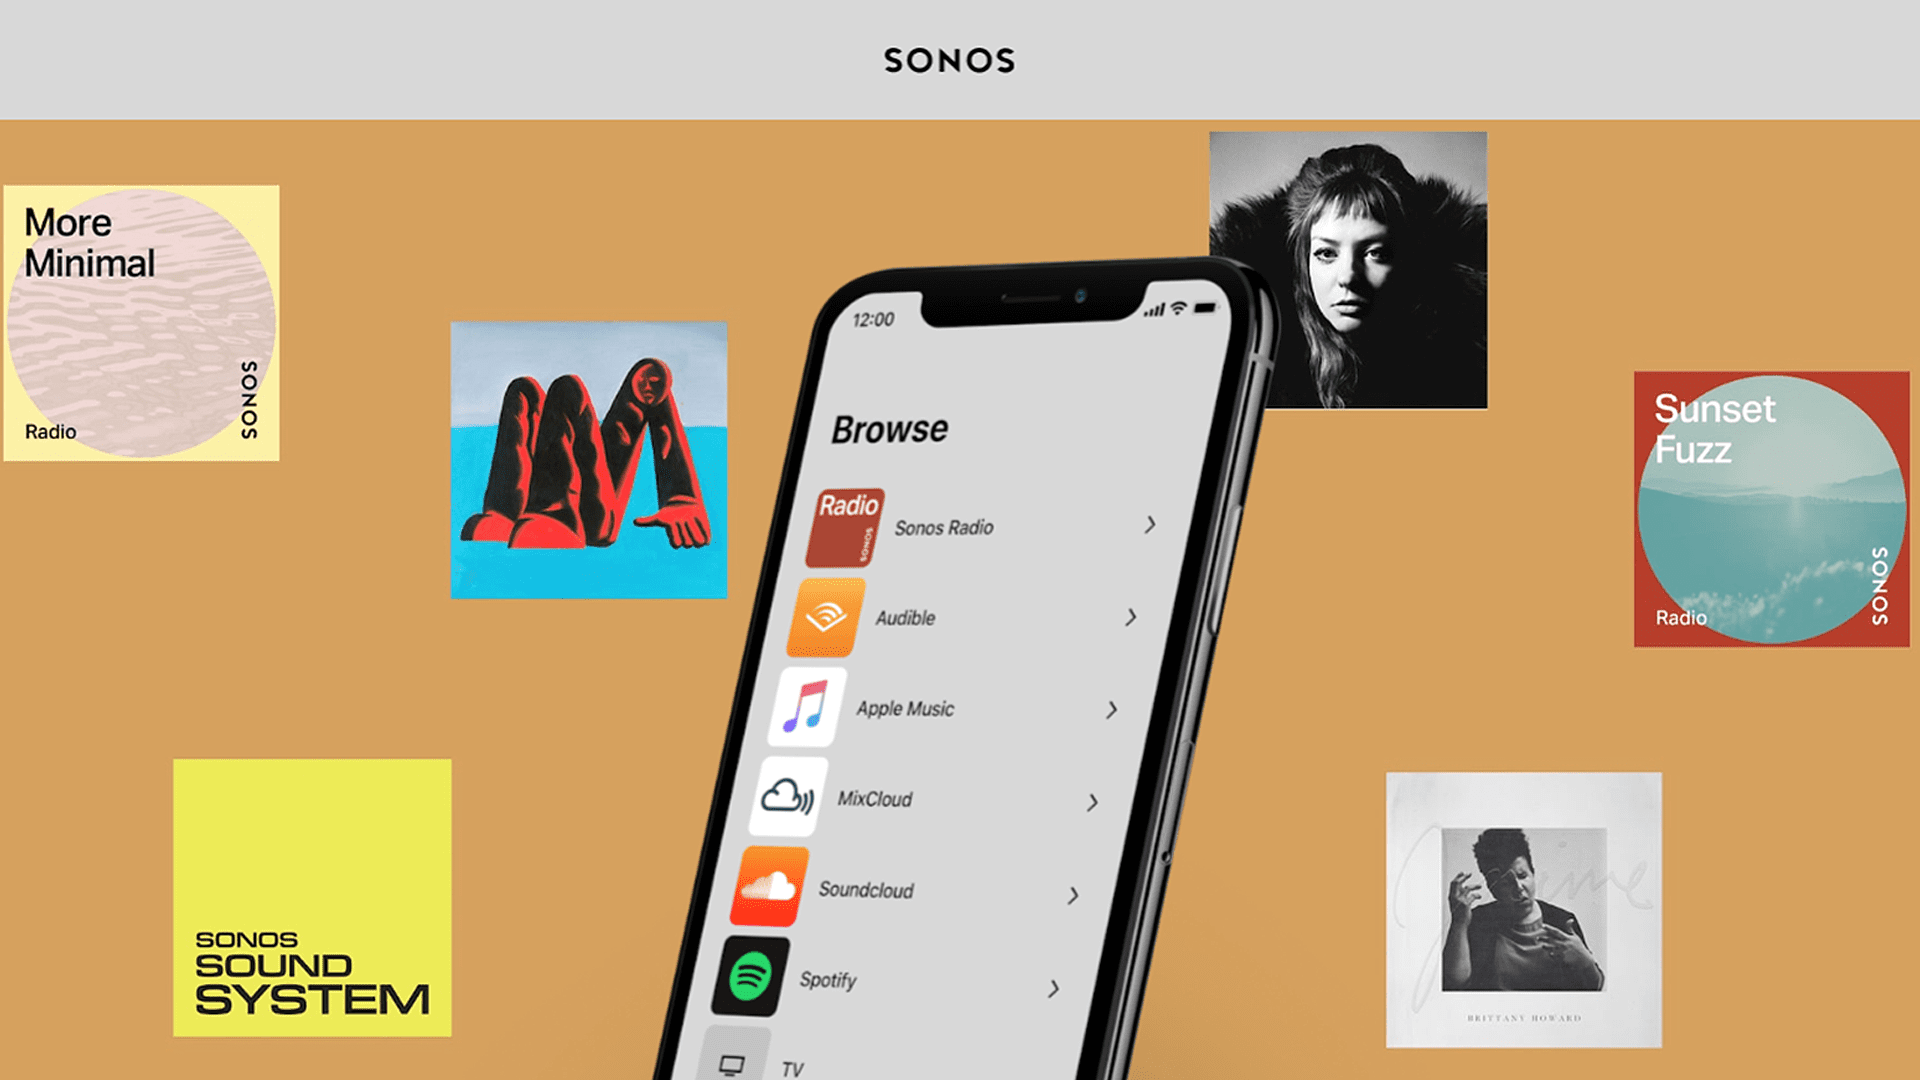 Ny Sonos S2-app introducerar högupplöst ljud men lämnar gamla högtalare